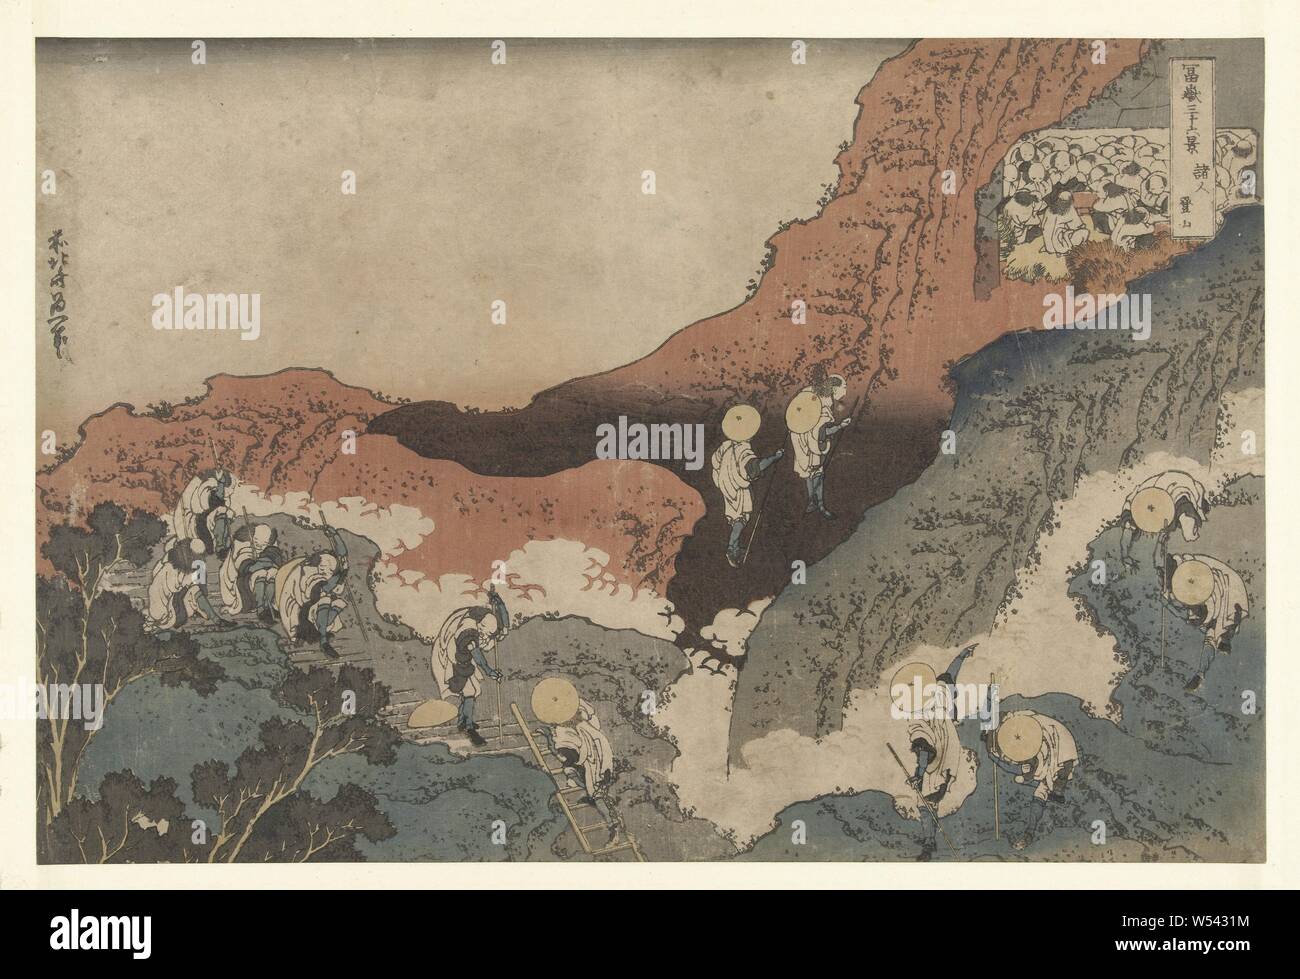 Bergsteiger Shojin tozan ist (Titel auf Objekt) 36 Blick auf Mount Fuji (Titel der Serie) Fuji sanjurokkei (Titel der Serie auf Objekt), Pilger in weißen Kleidern Besteigung des Mount Fuji, oben rechts verschiedene Pilger in einer Höhle, Fuji, der Berg, Katsushika Hokusai (auf Objekt erwähnt), 1831-1835, Papier, Farbholzschnitt, H 244 mm x B 368 mm Stockfoto